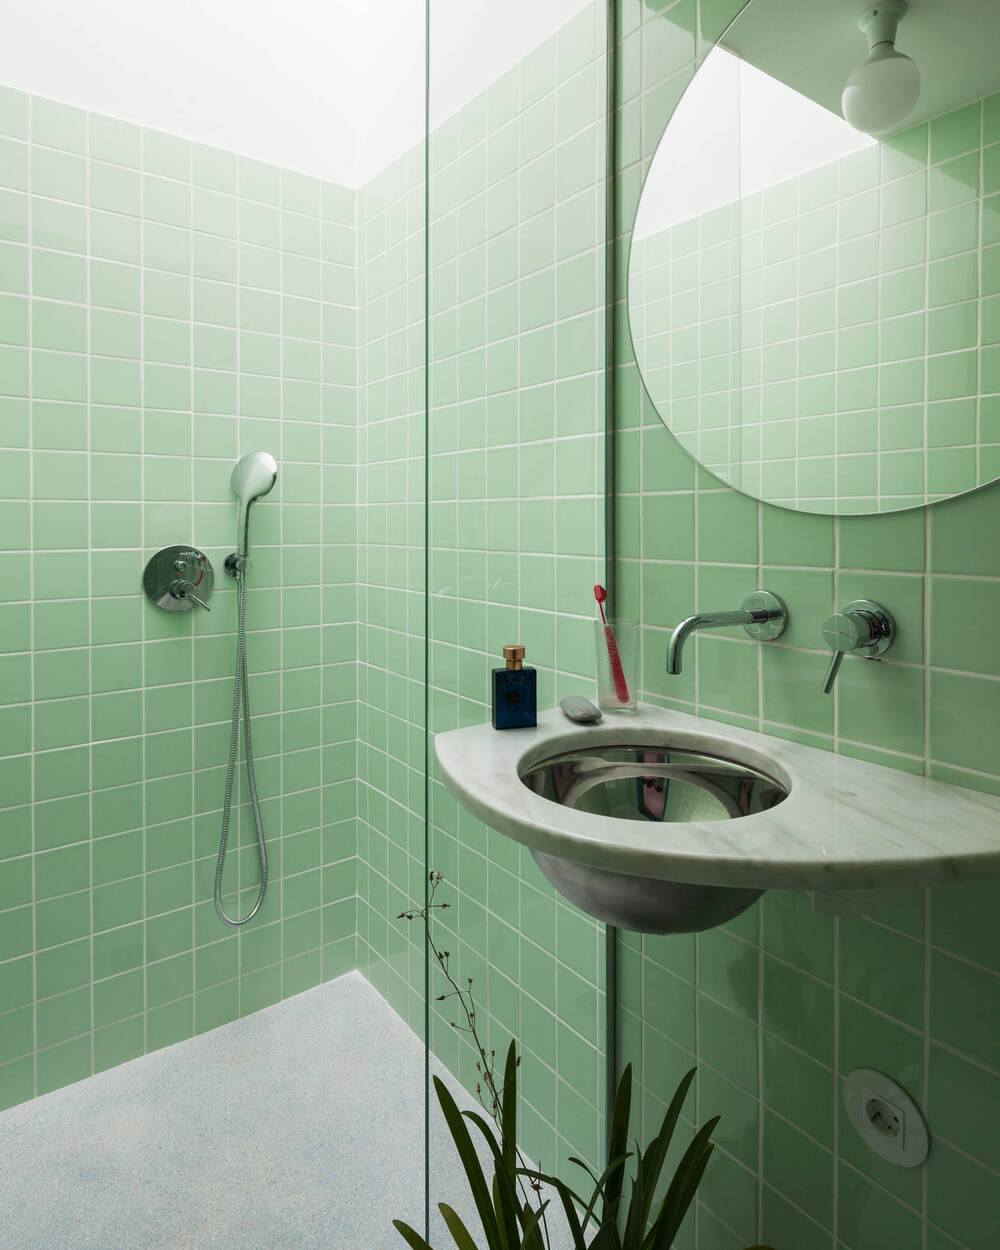 浴室墙壁上贴着一致的绿色瓷砖，使固定装置脱颖而出。